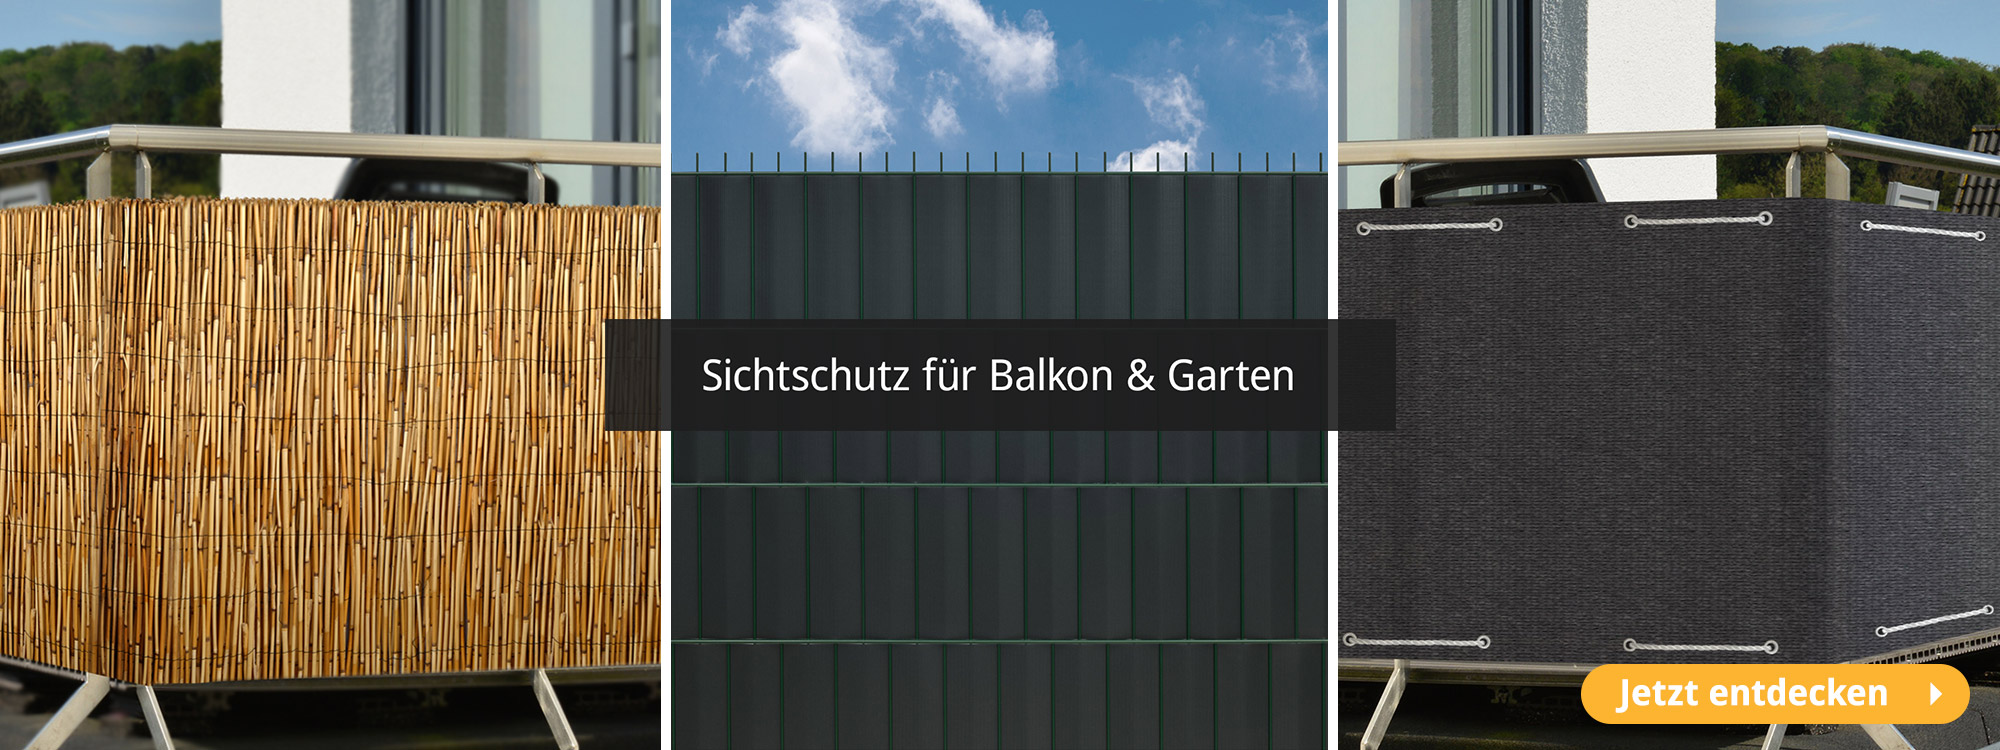 Sichtschutz für Balkon & Garten